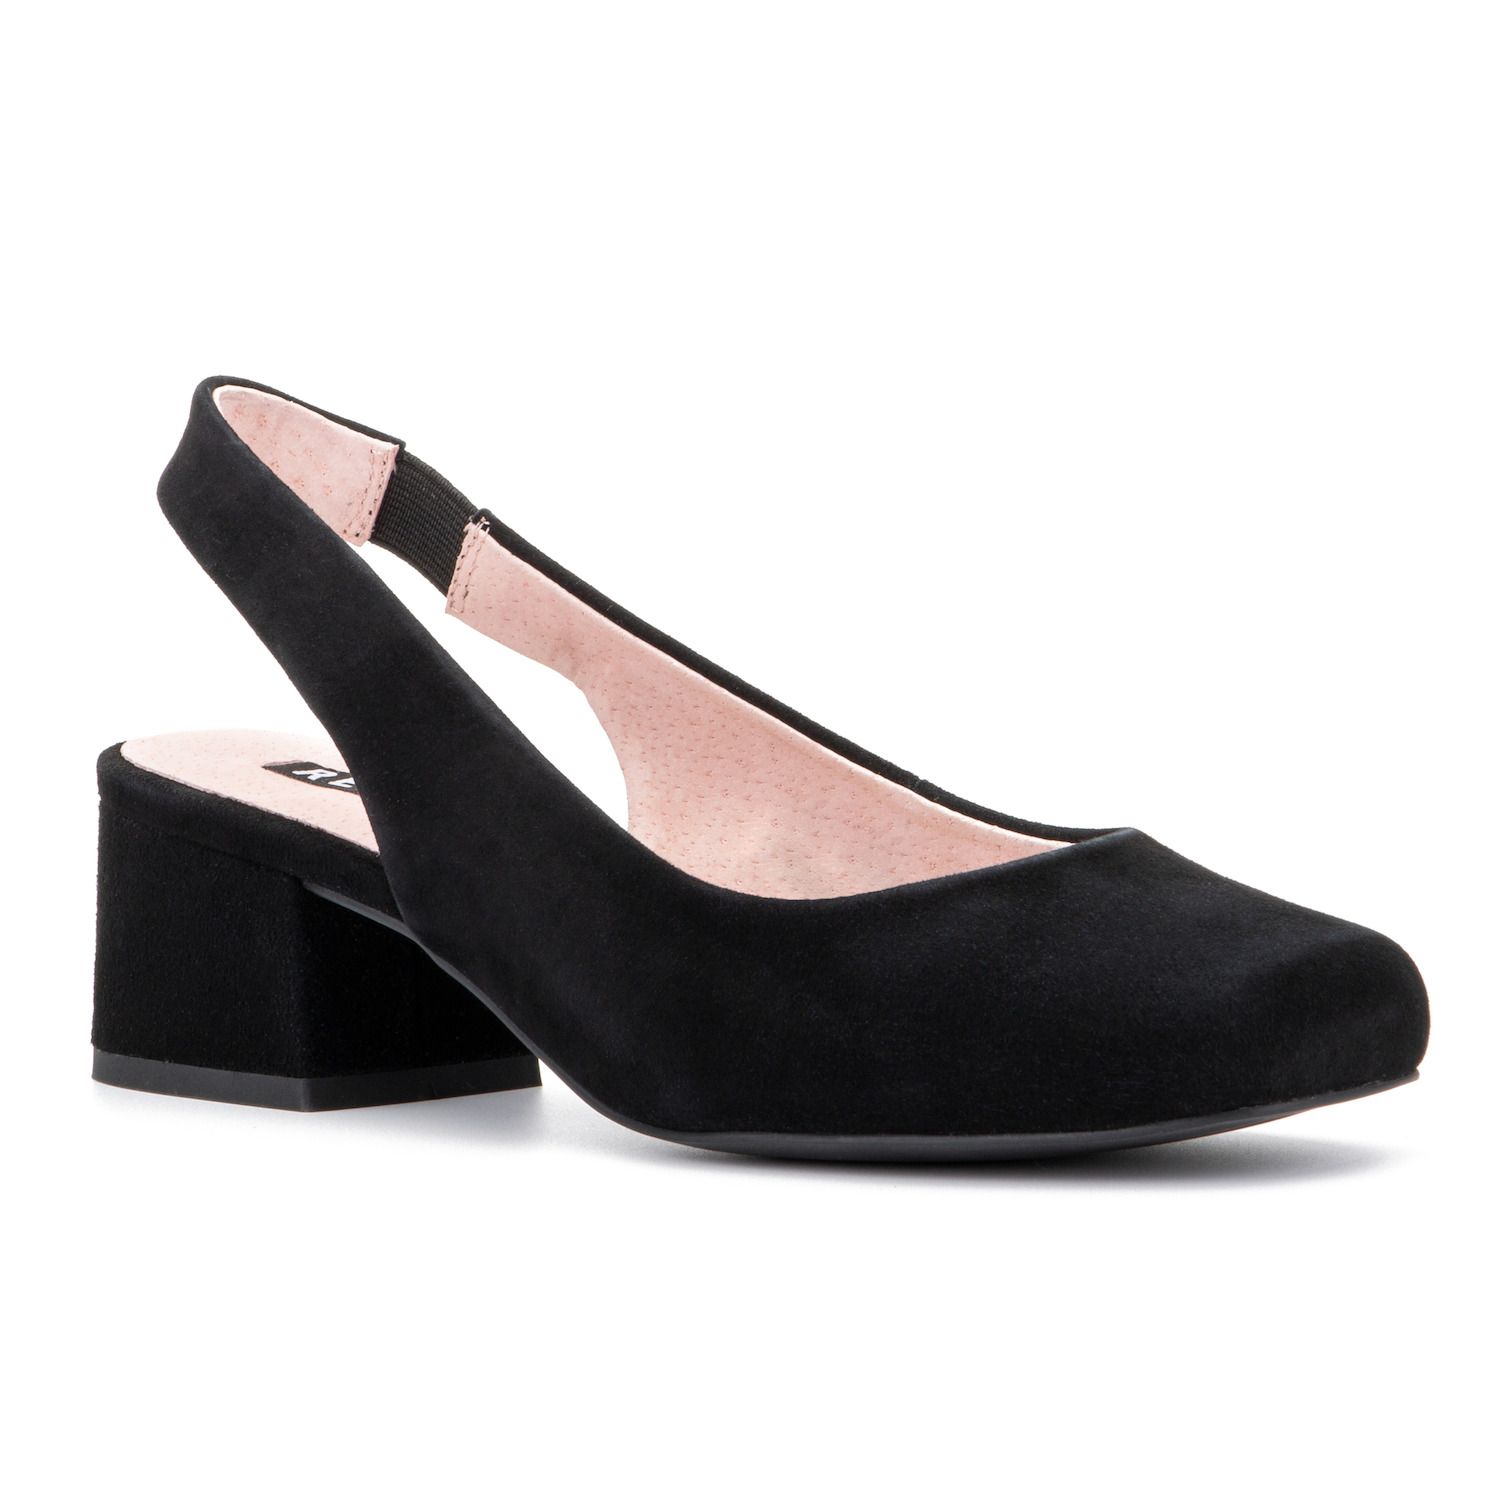 Black Non-Slip Pumps \u0026 Heels - Shoes 